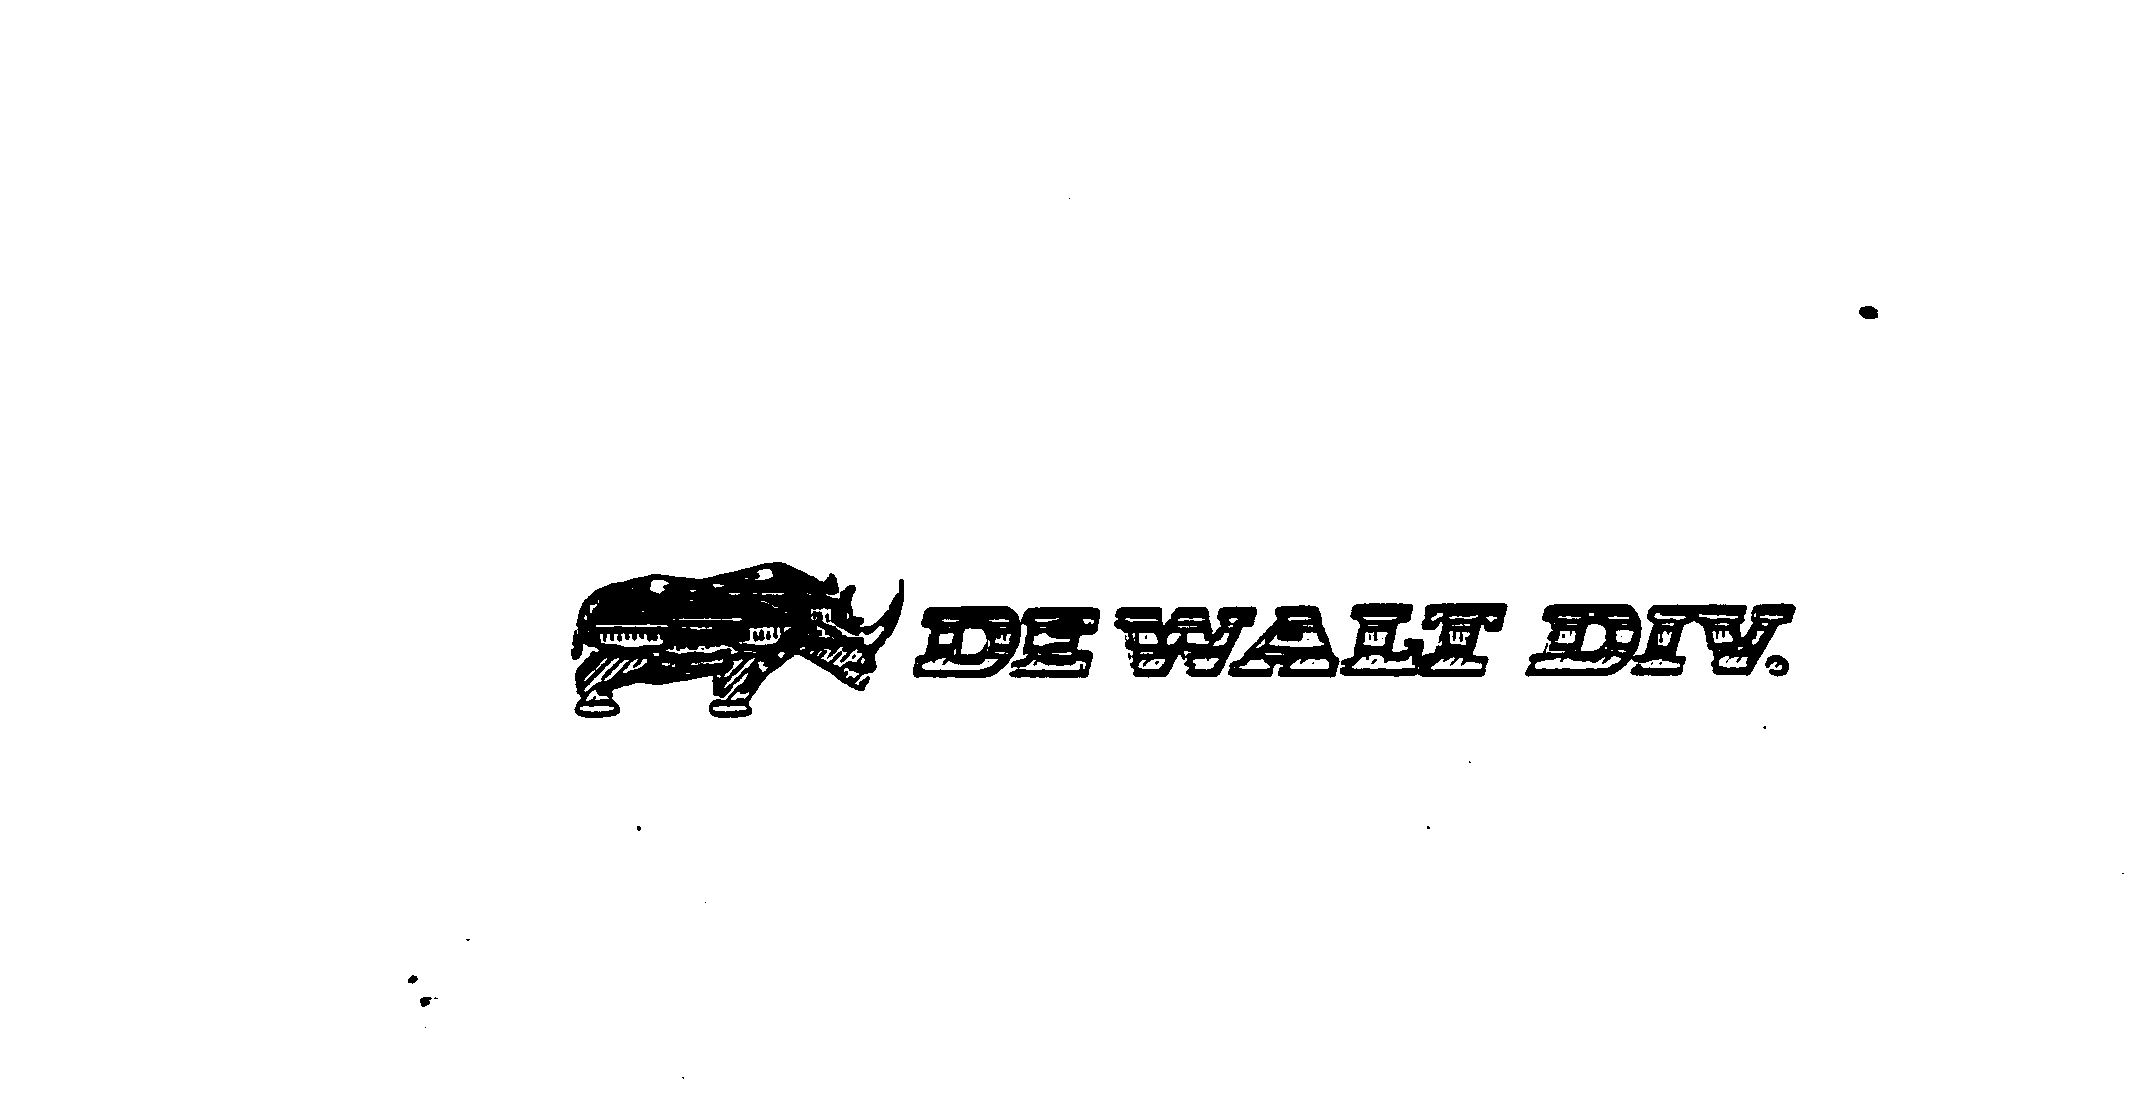  DE WALT DIV.